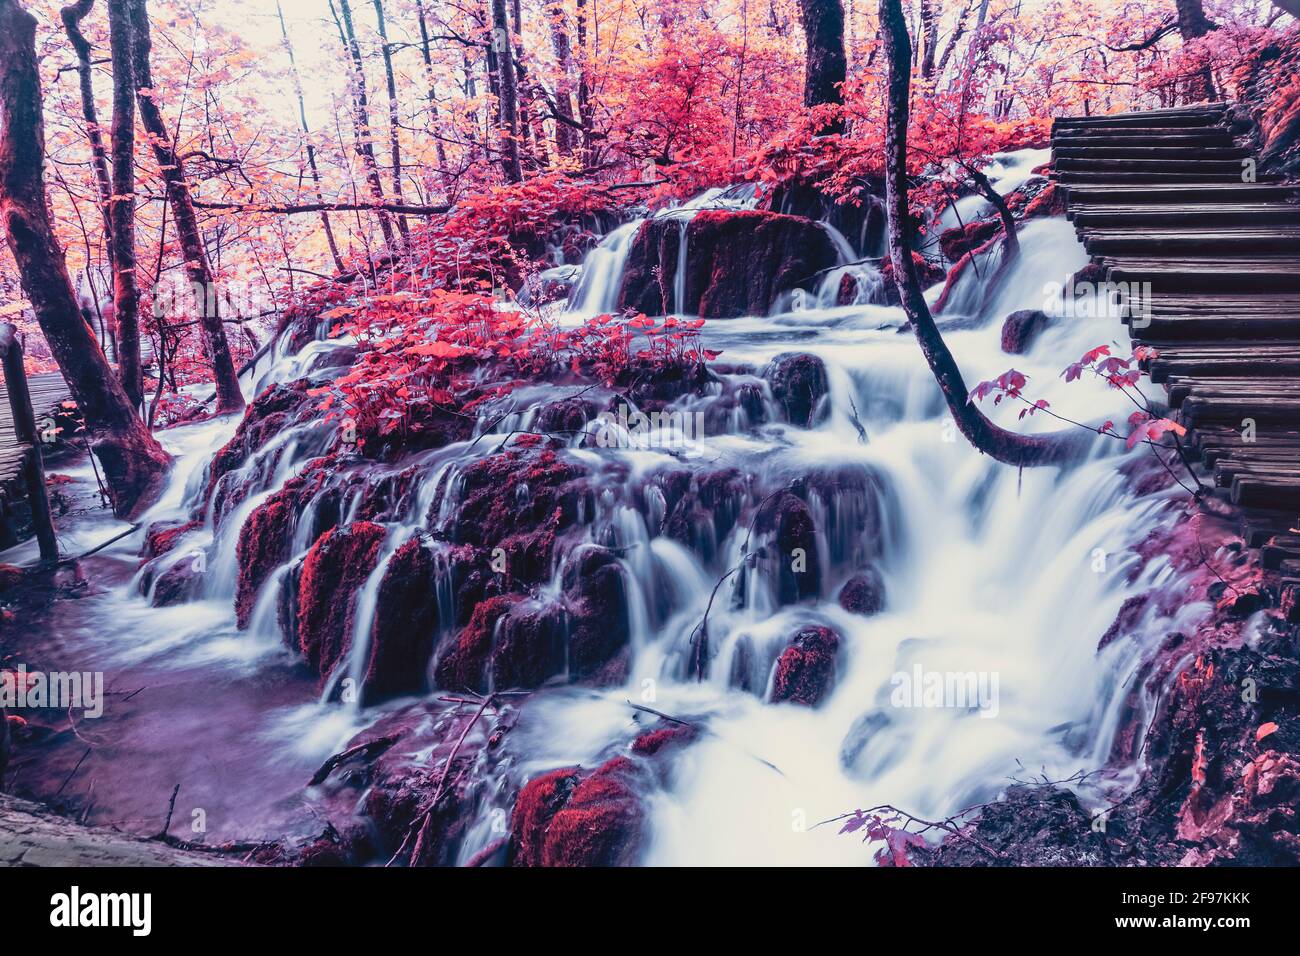 Beaucoup d'eau, de feuilles rouges et une nature à couper le souffle dans le parc national des lacs de Plitvice en Croatie. L'image est manipulée en couleur. Banque D'Images